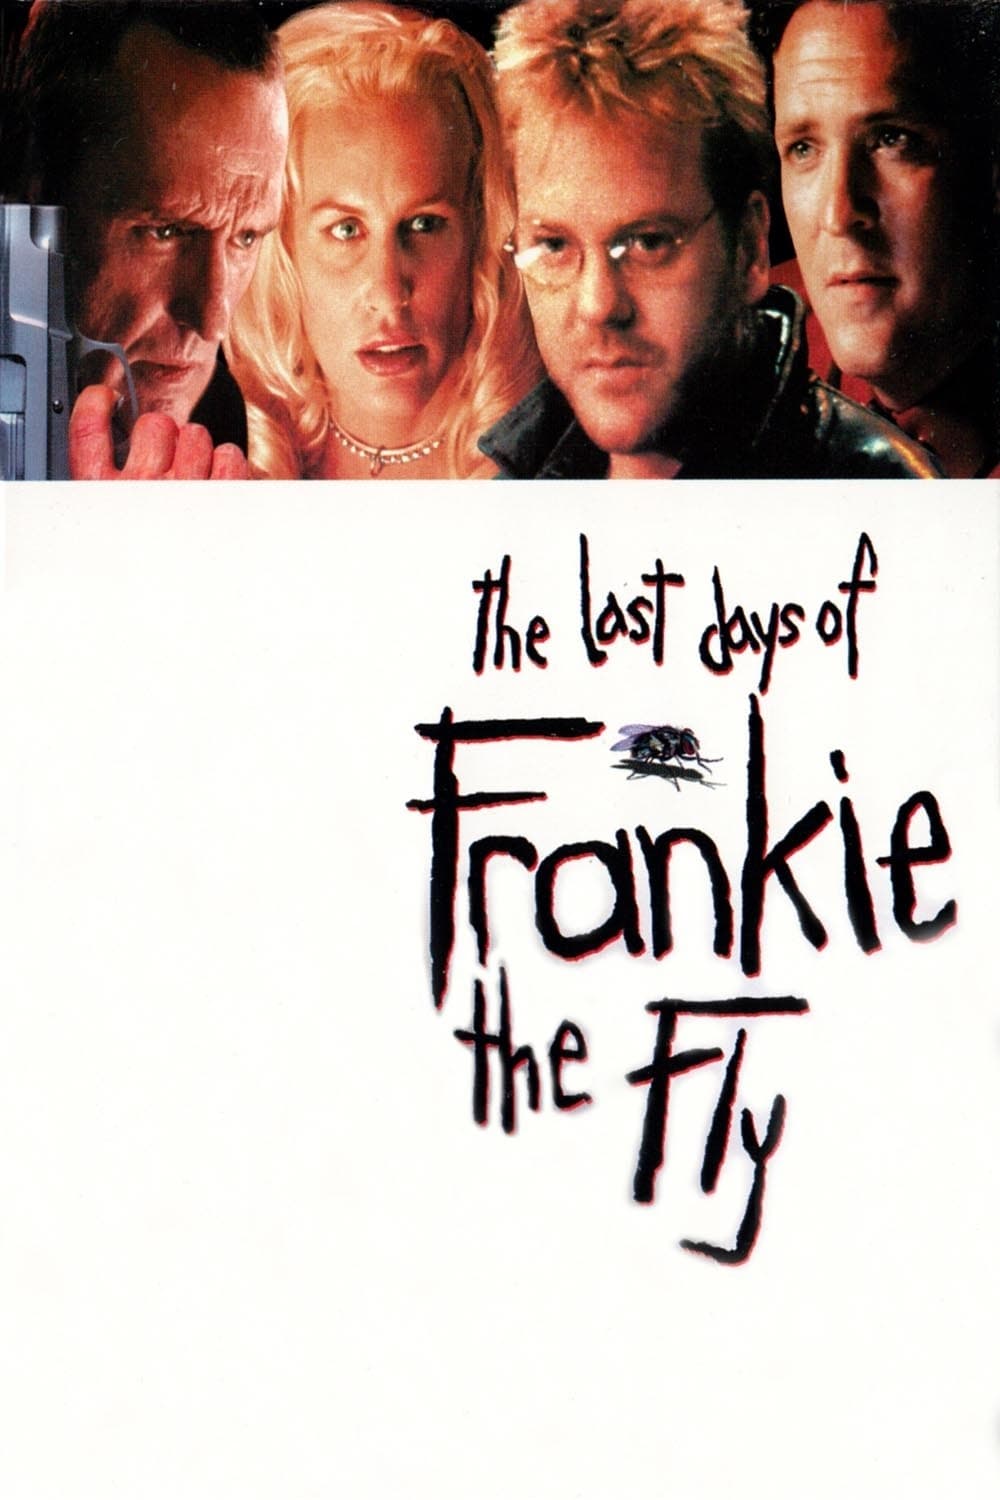 Plakat von "Frankie the Fly"